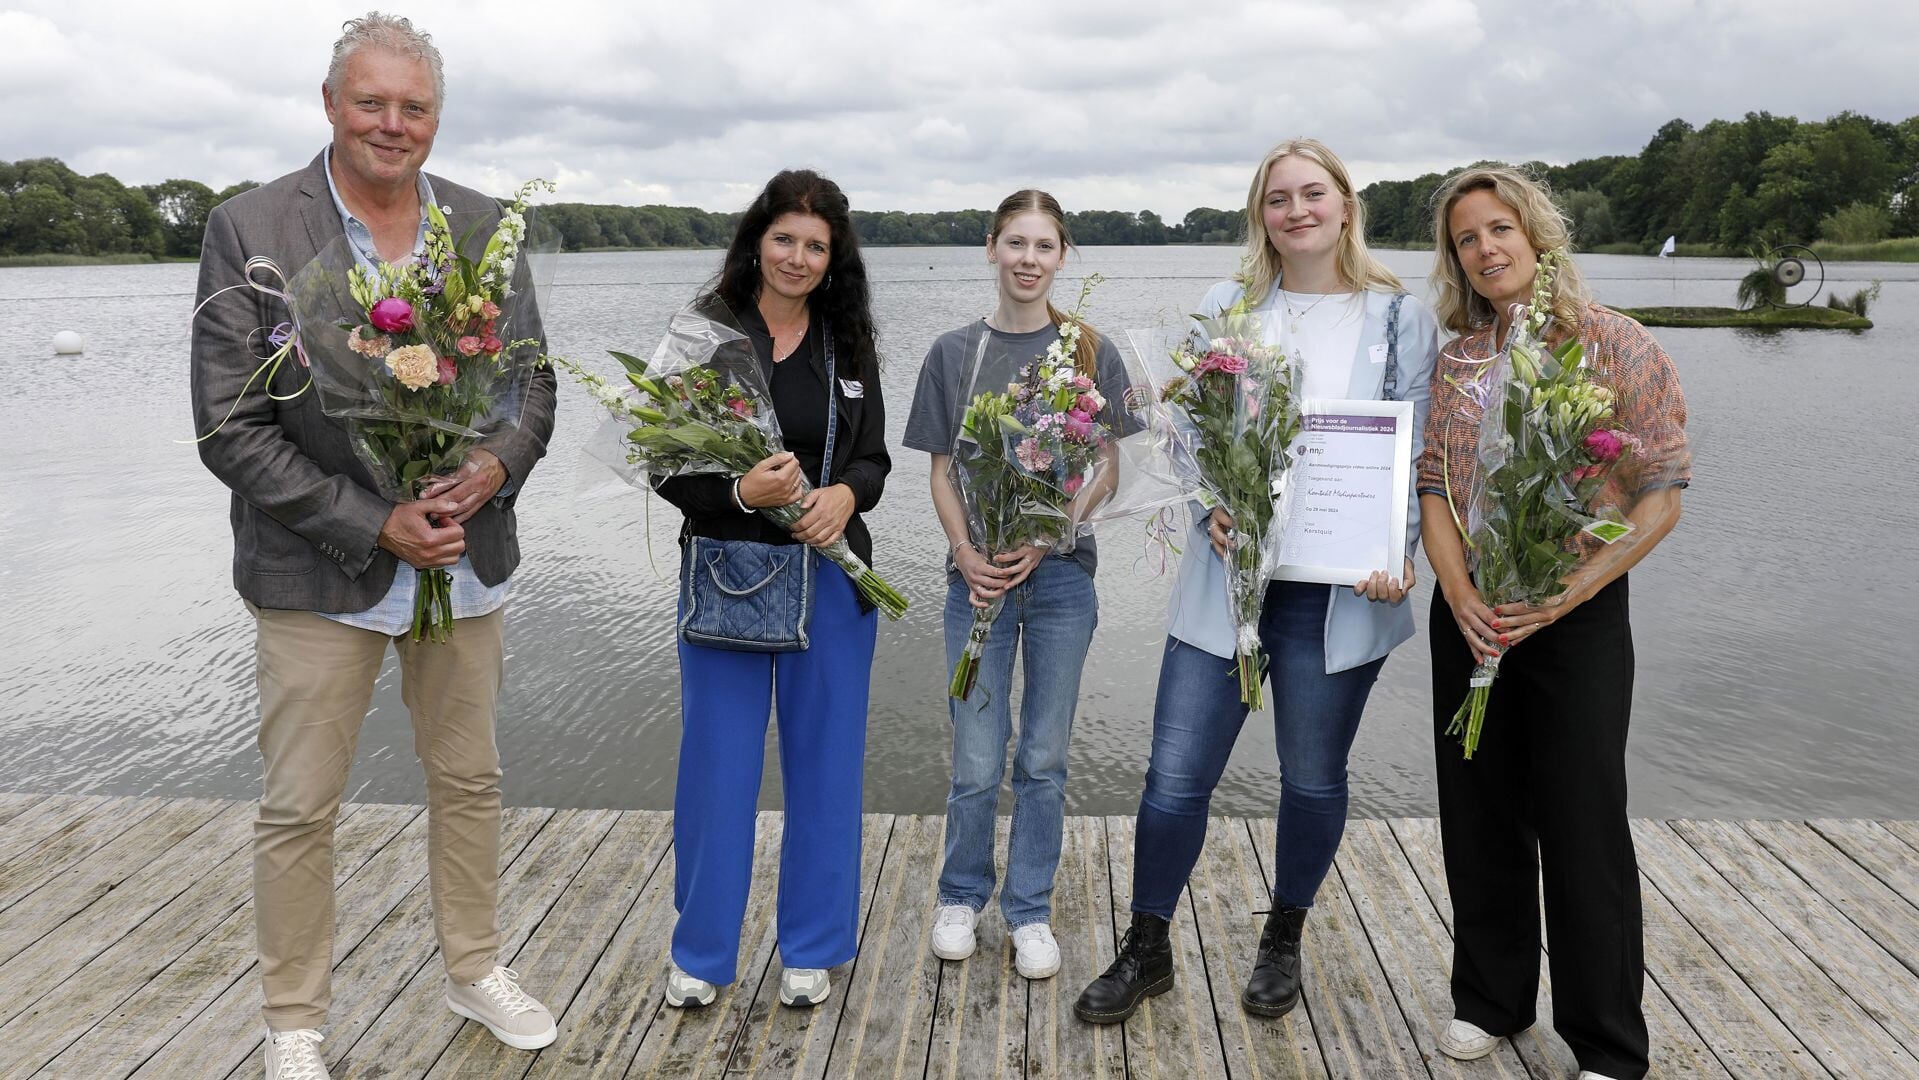 • De winnaars en genomineerden van de videoprijs, met rechts Linda Vermeer en Ilse den Burger en links Rick den Besten.